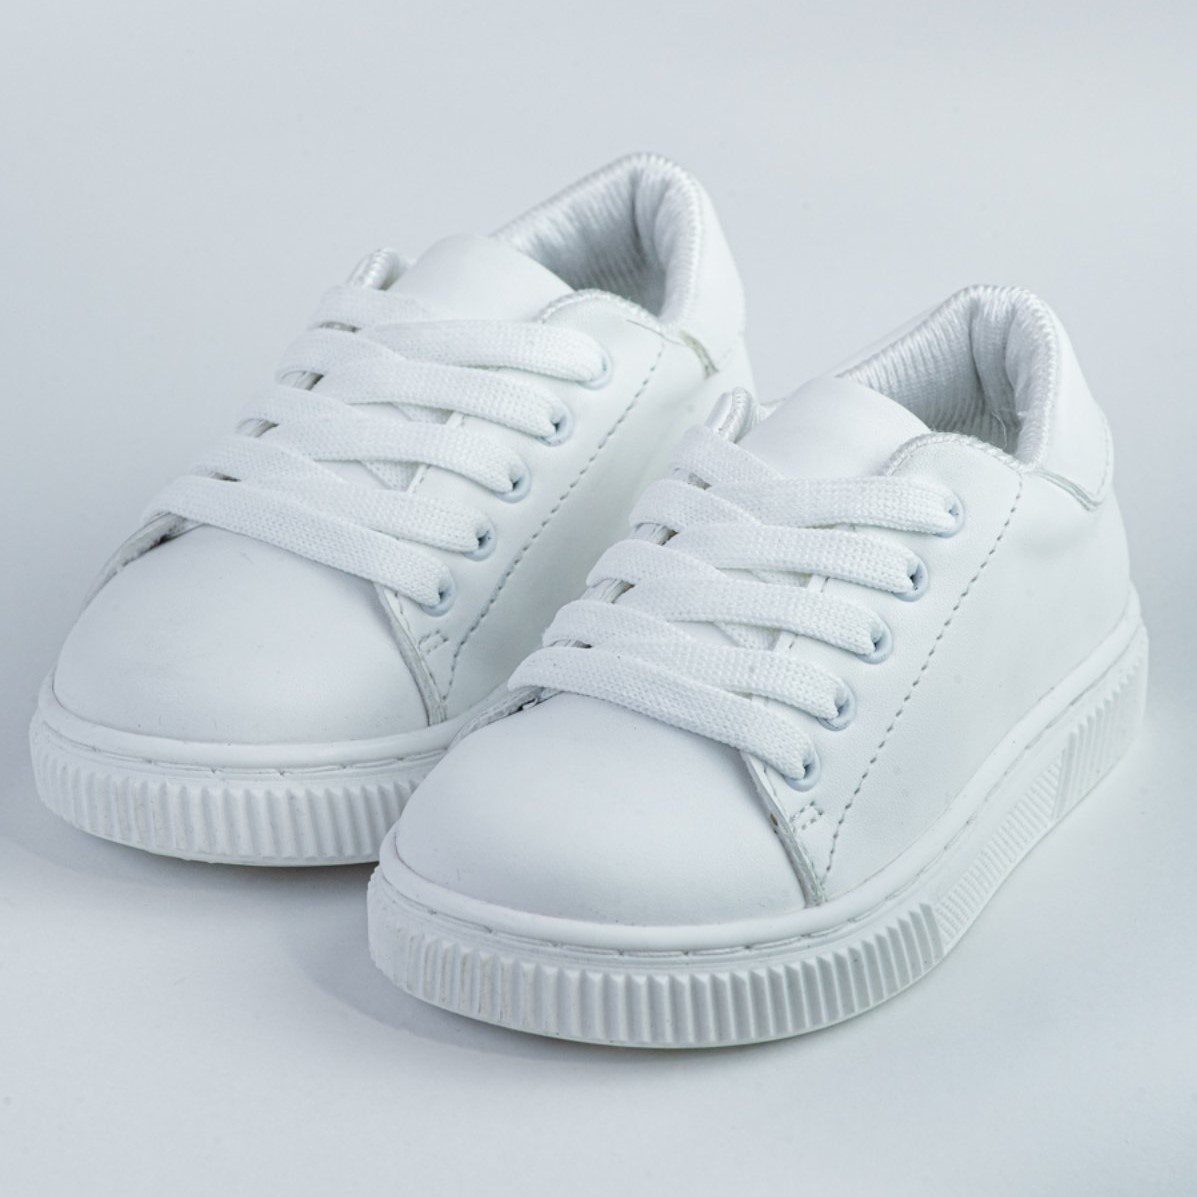 Βαπτιστικά παπούτσια τύπου sneakers σε άσπρο